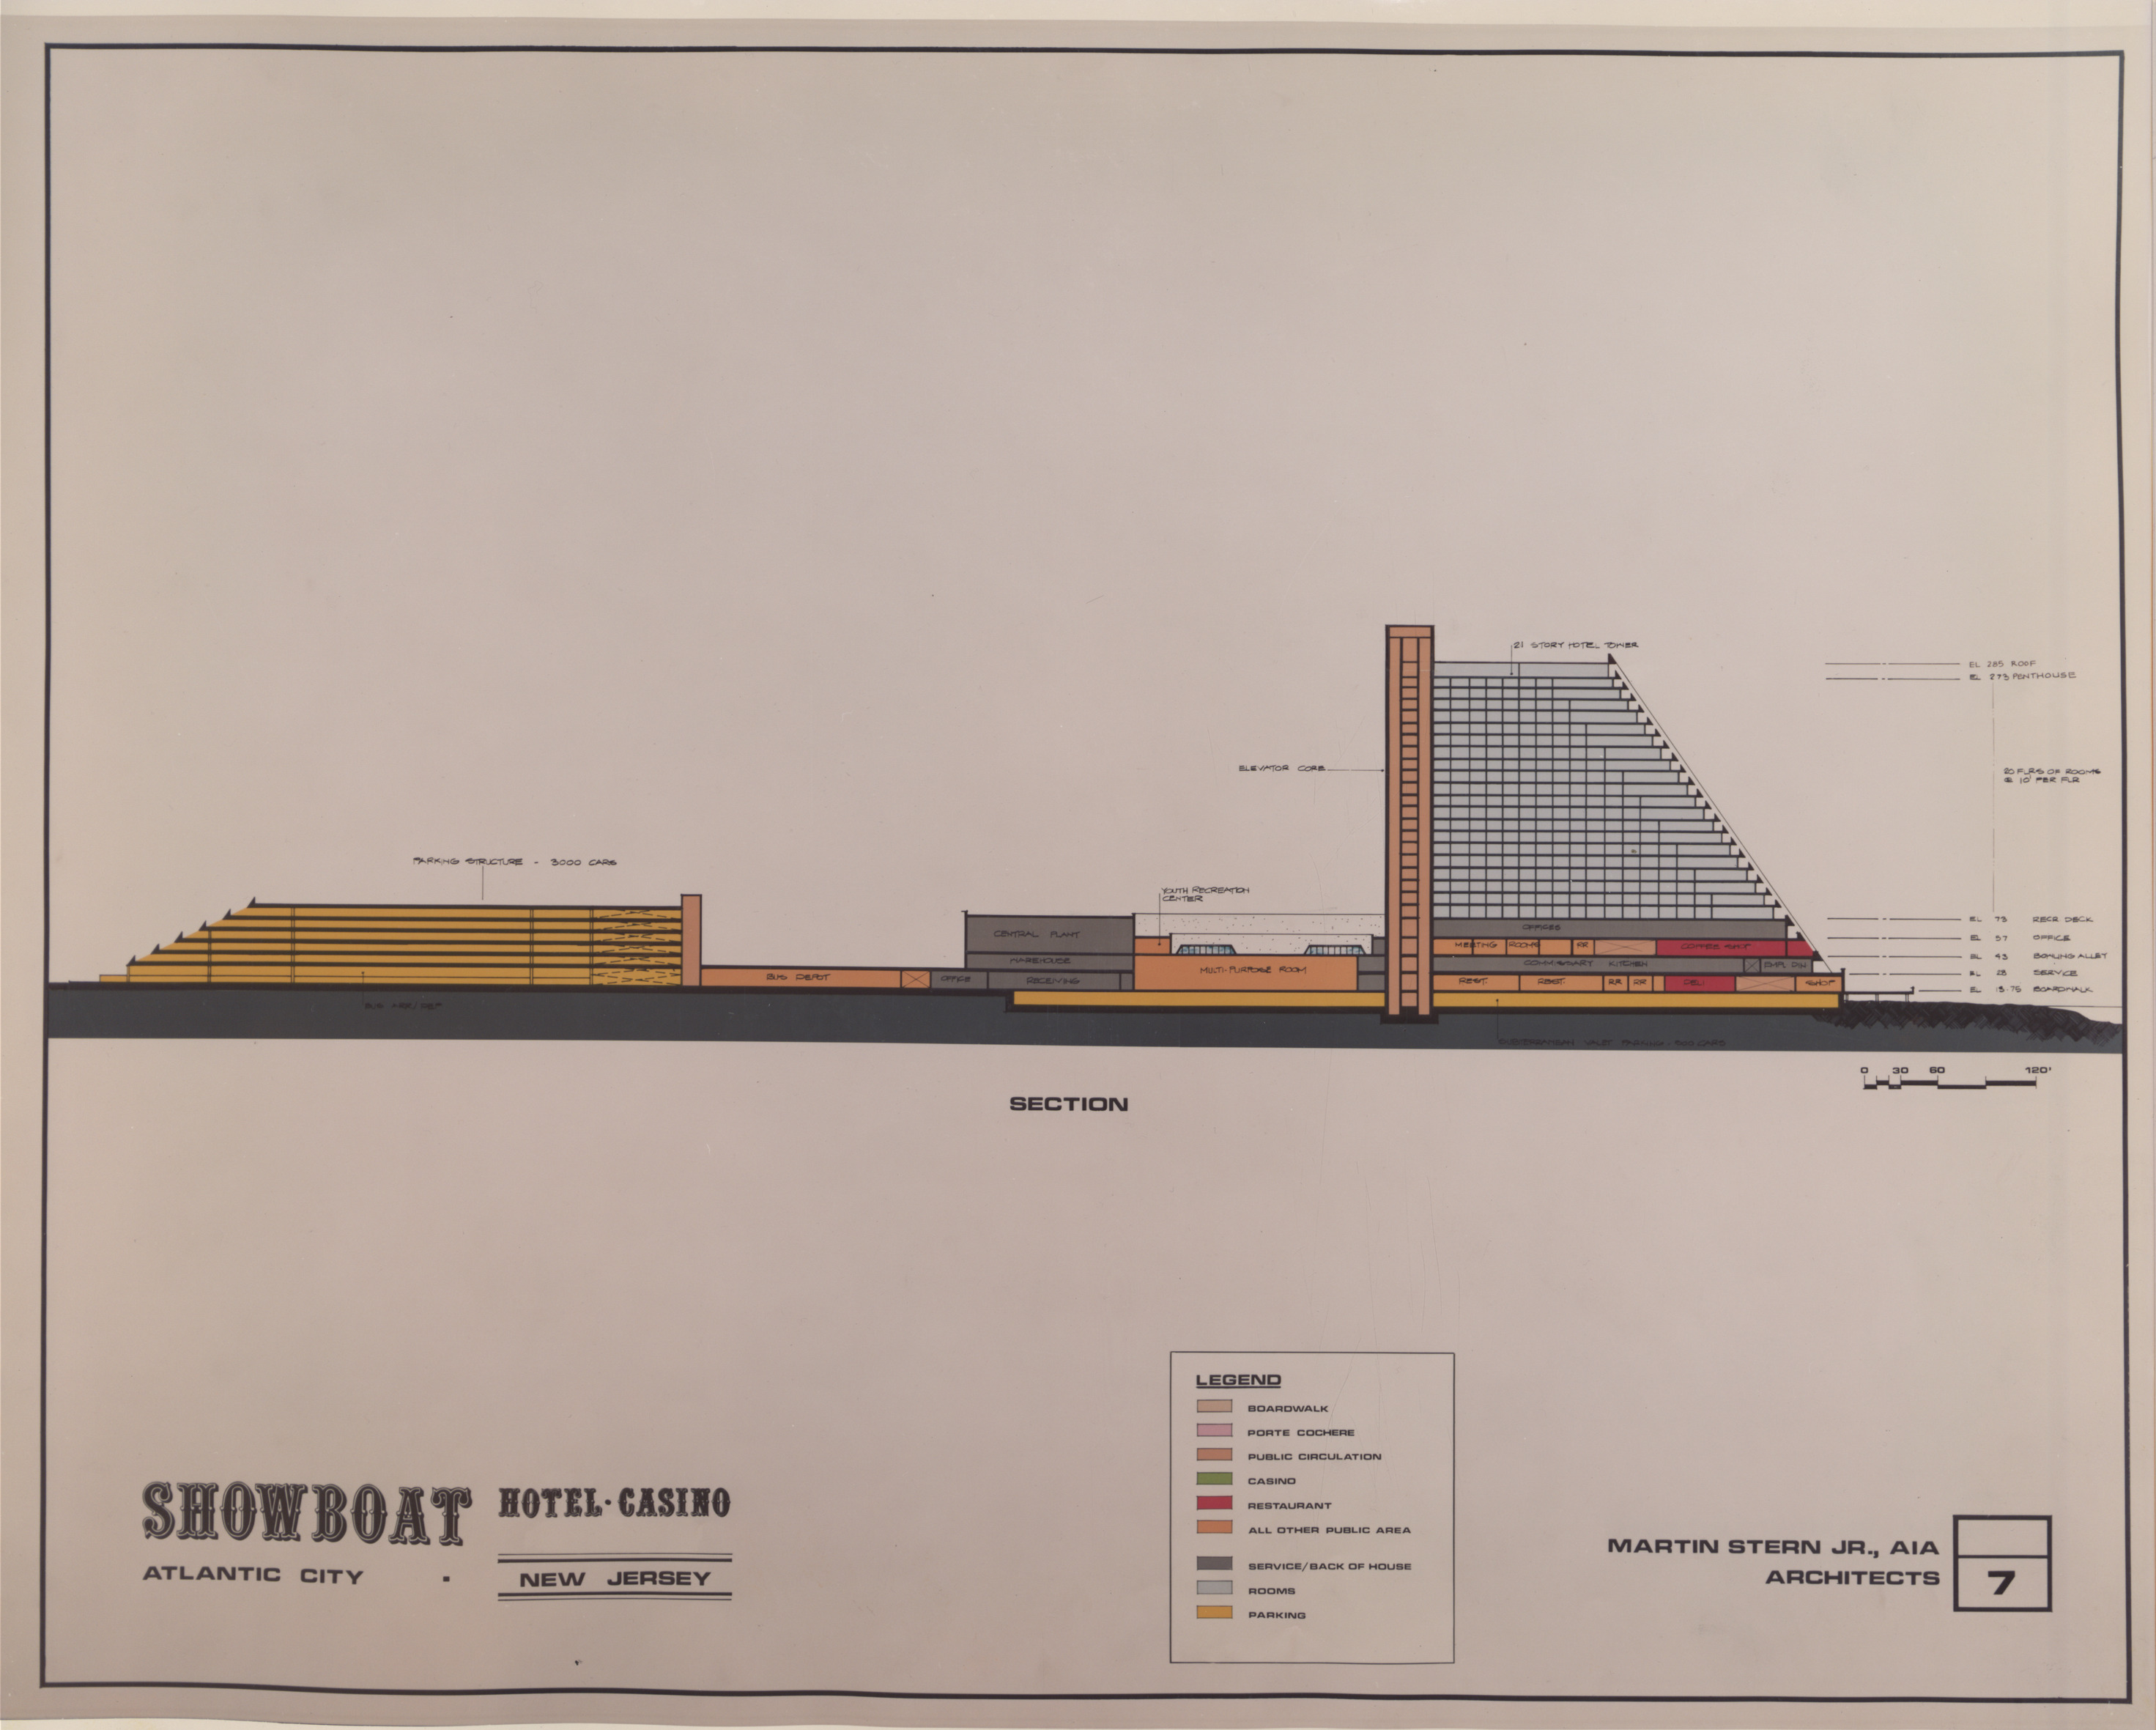 Atlantic City Showboat Hotel Casino Proposal, image 7